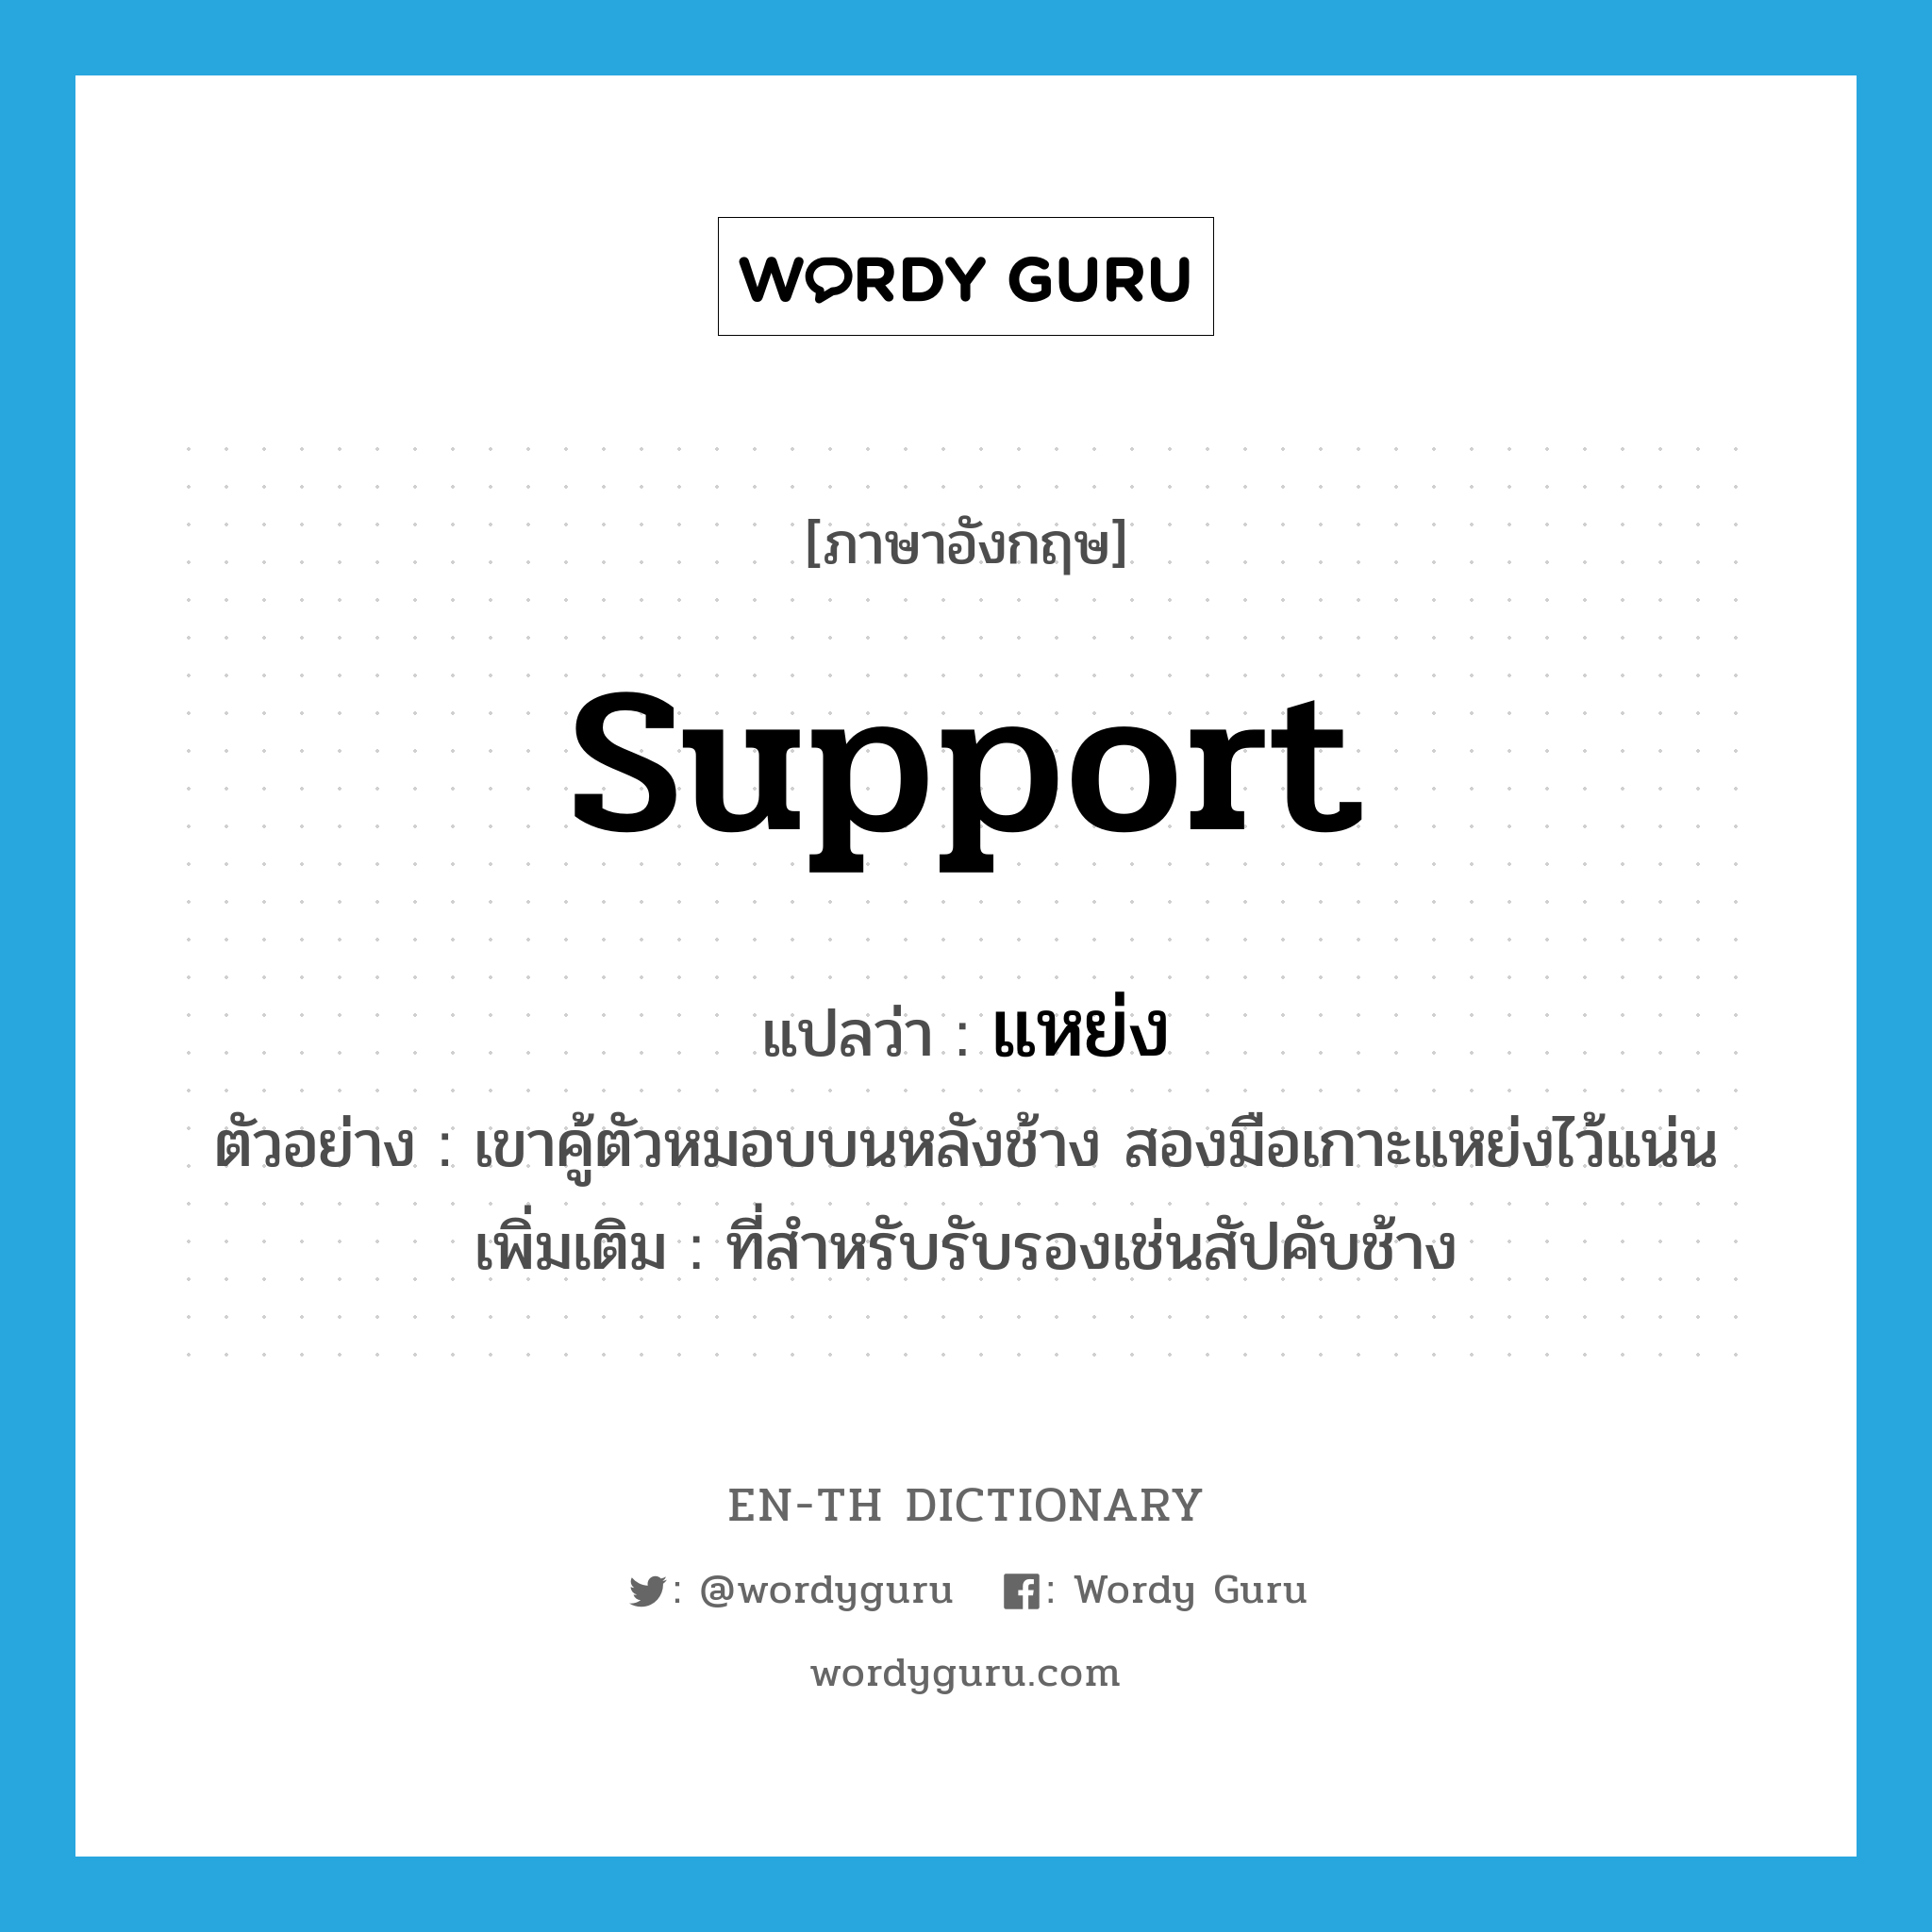 support แปลว่า?, คำศัพท์ภาษาอังกฤษ support แปลว่า แหย่ง ประเภท N ตัวอย่าง เขาคู้ตัวหมอบบนหลังช้าง สองมือเกาะแหย่งไว้แน่น เพิ่มเติม ที่สำหรับรับรองเช่นสัปคับช้าง หมวด N